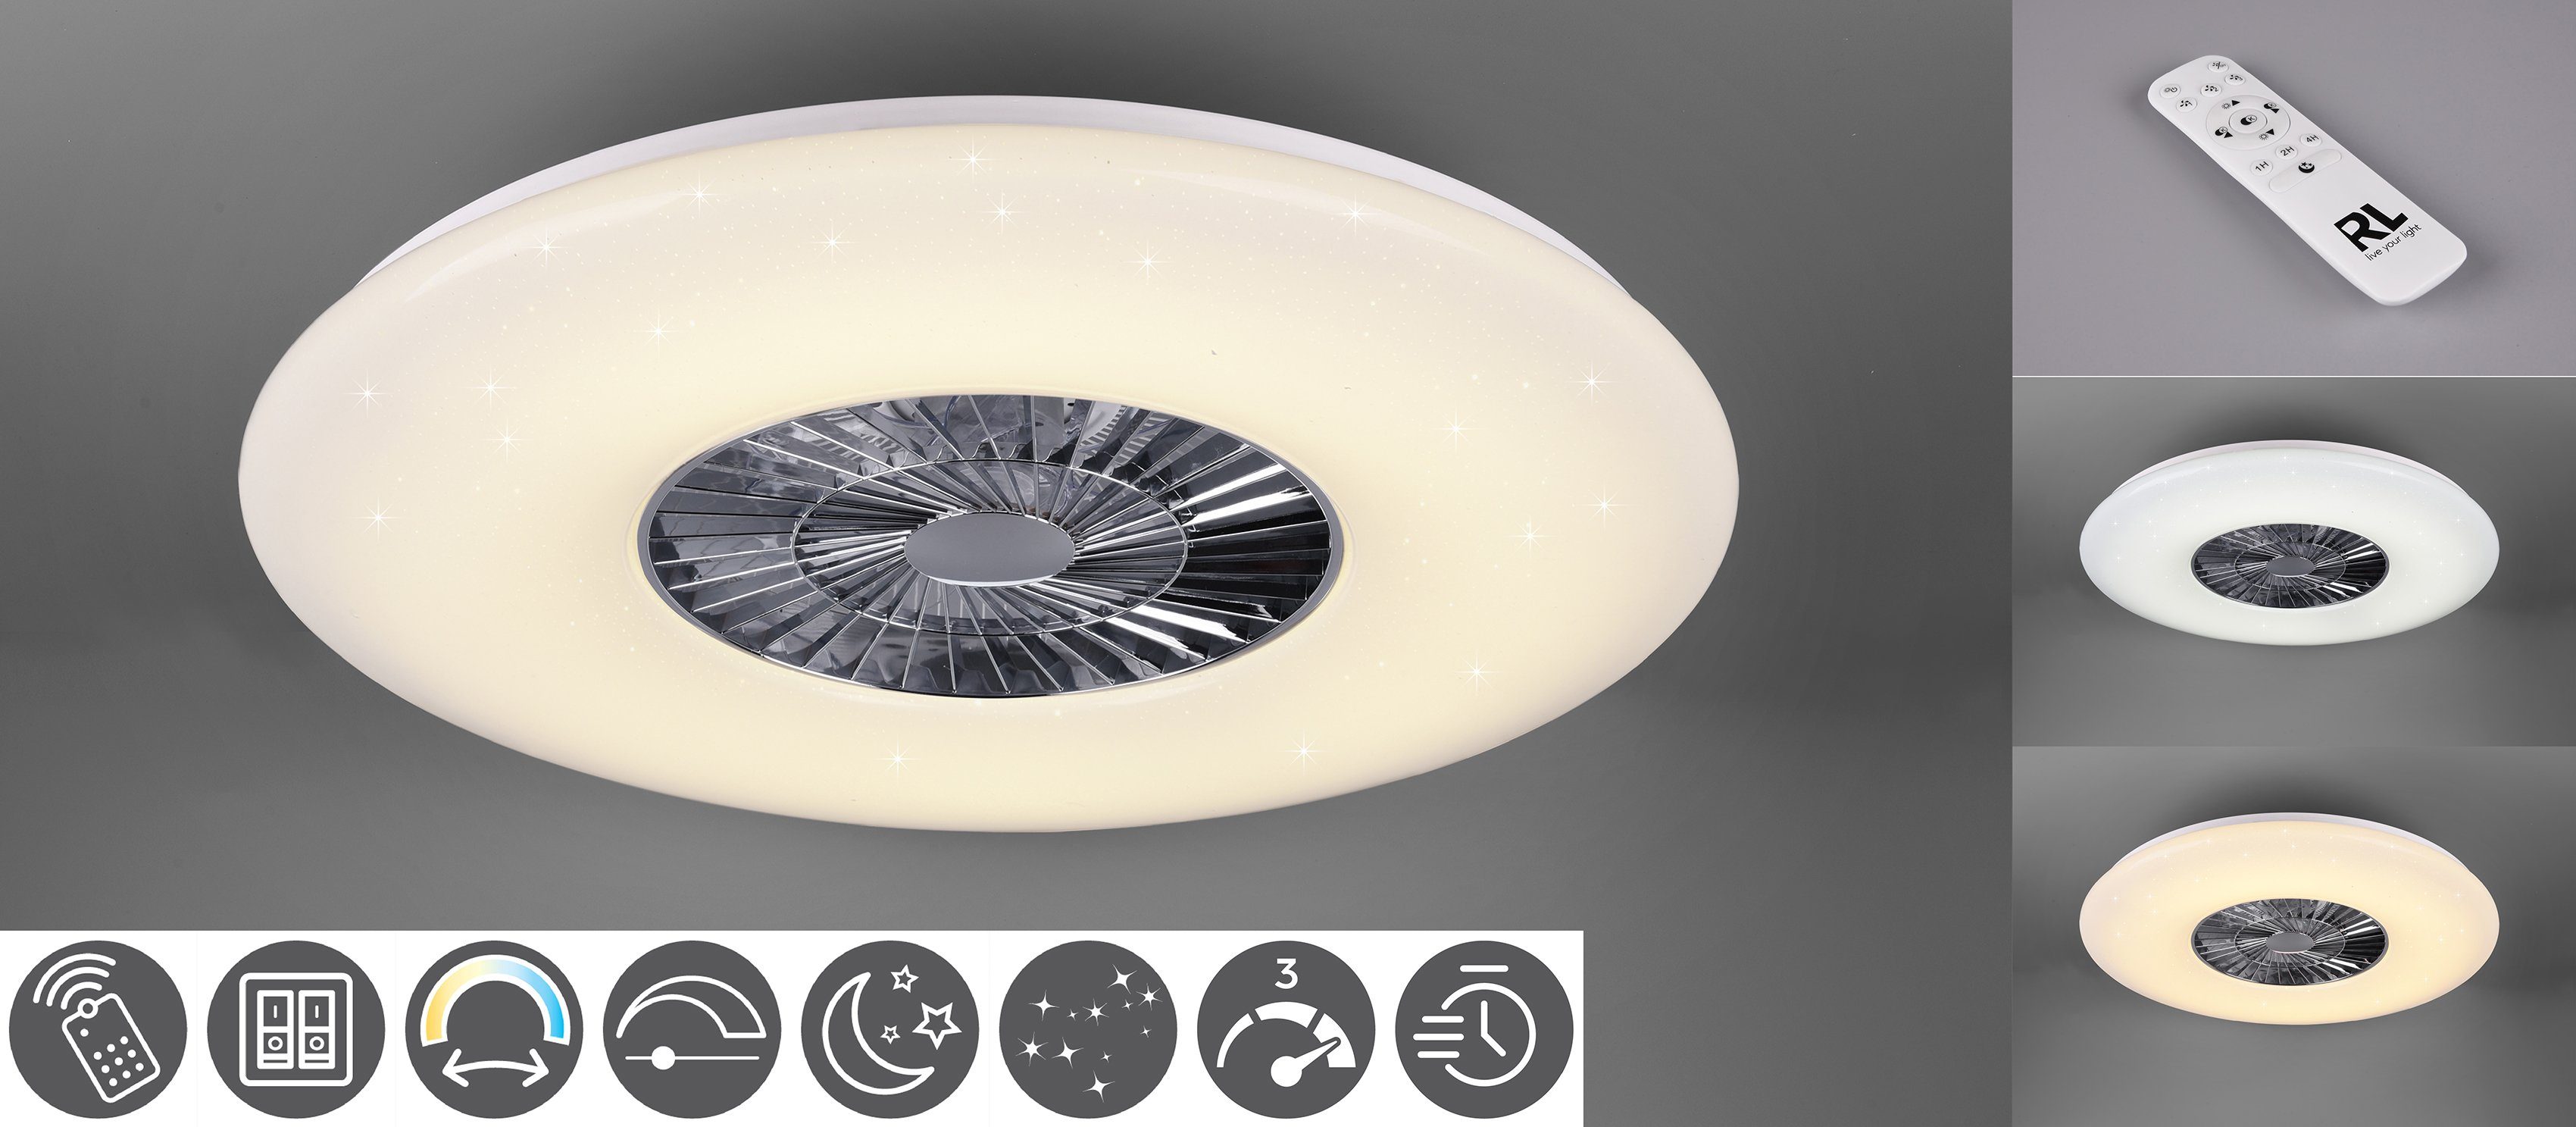 schaltbar Leuchte/ integriert, Deckenleuchte Visby, mit fest getrennt LED Neutralweiß, TRIO Ventilator, Timerfunktion, Ventilator Ventilatorfunktion, Fernbedienung., Leuchten LED